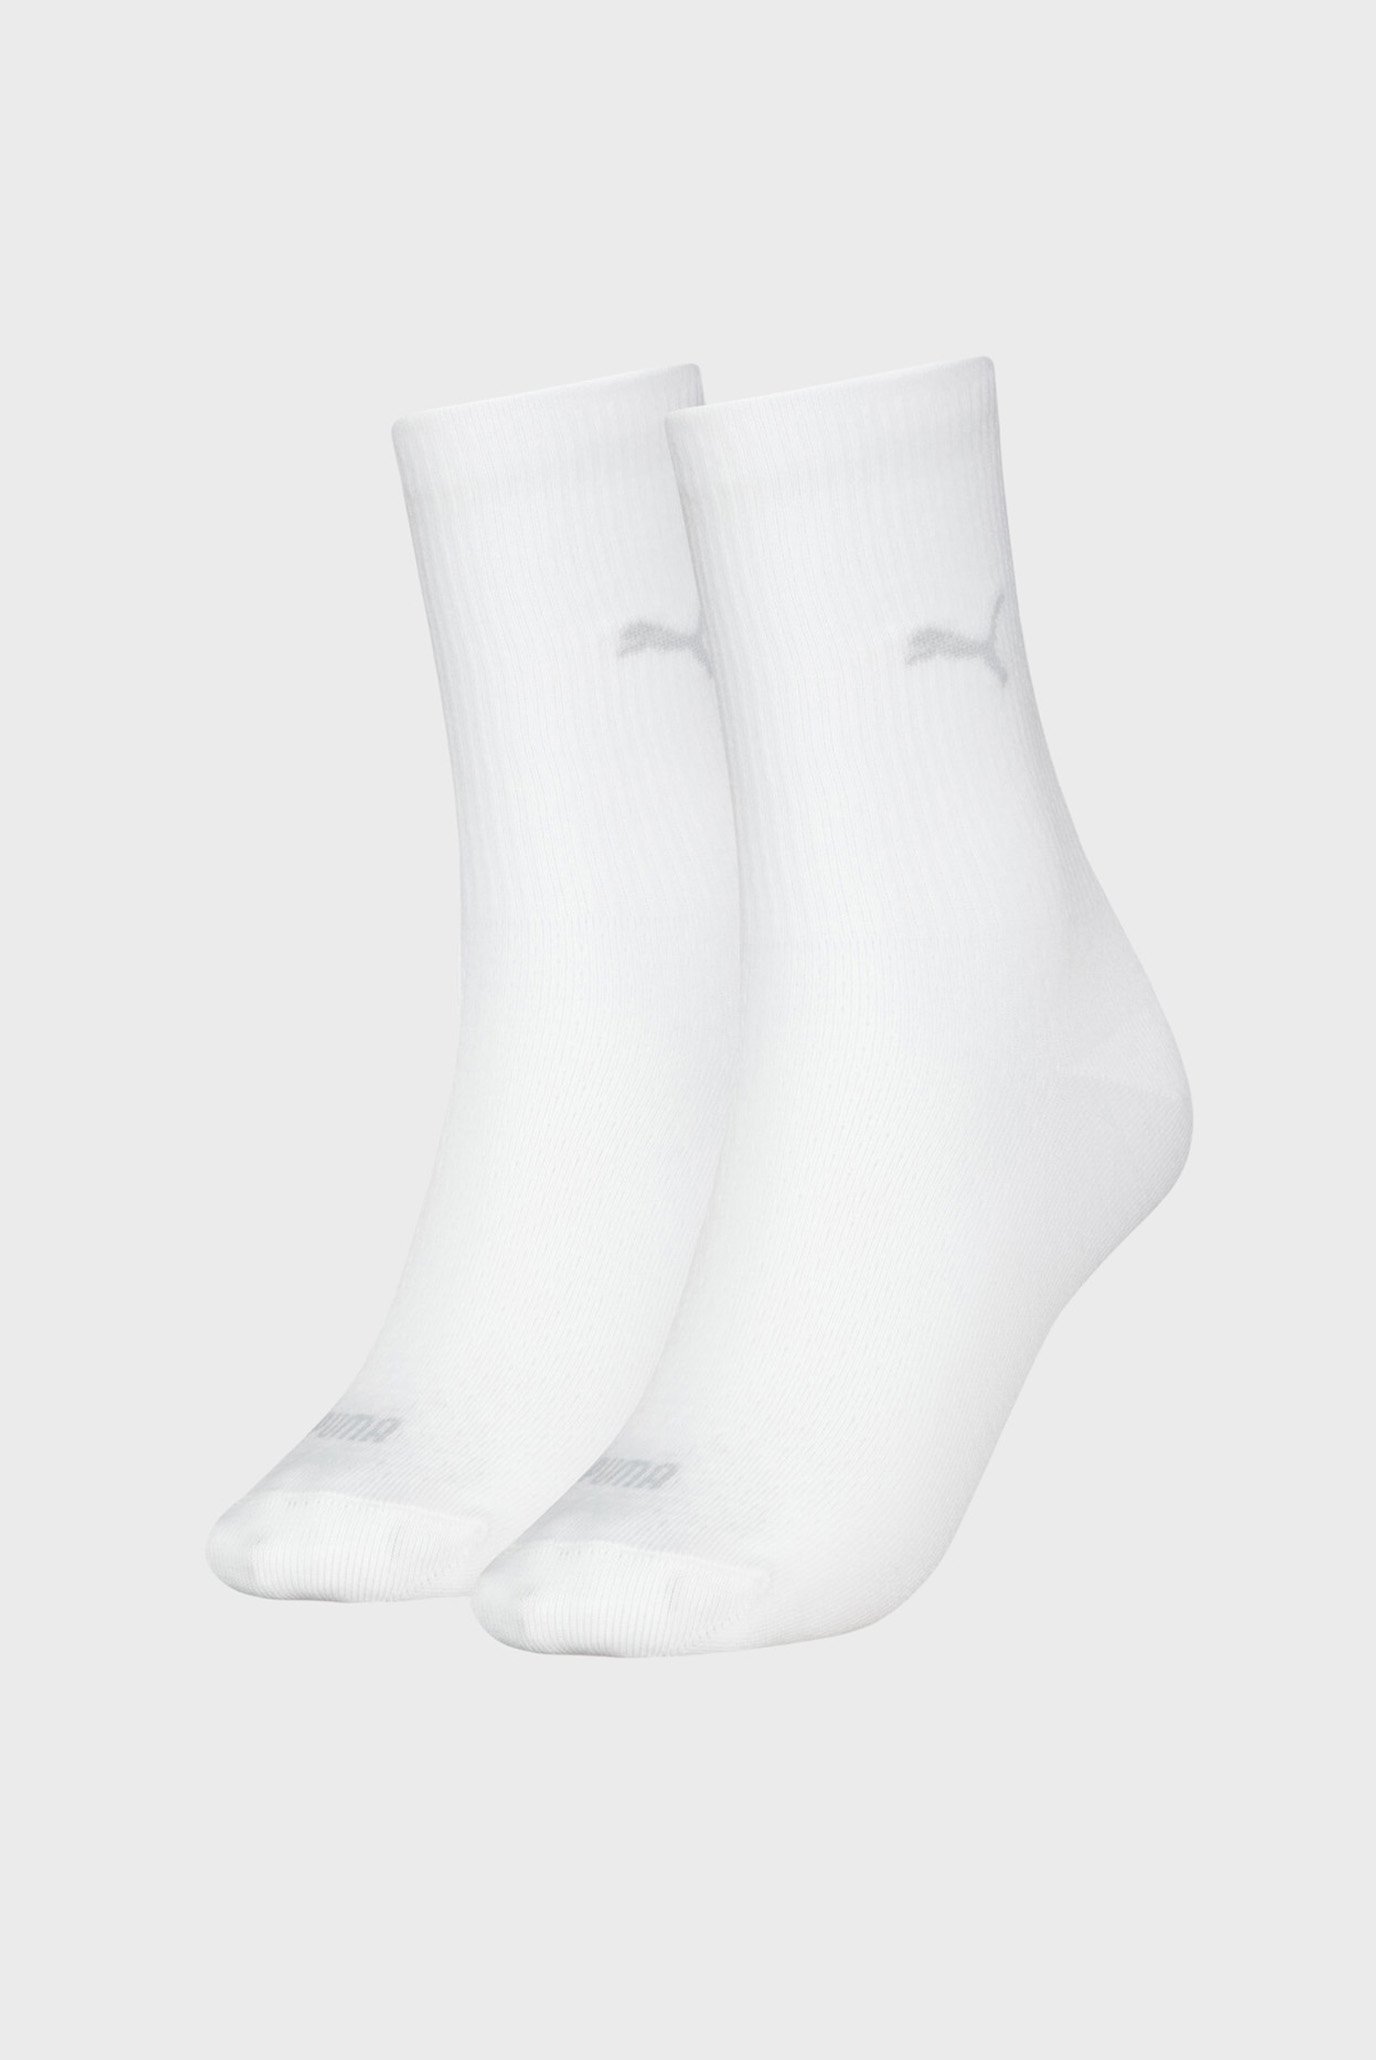 Женские белые носки (2 пары) PUMA Women's Classic Socks 2 Pack 1